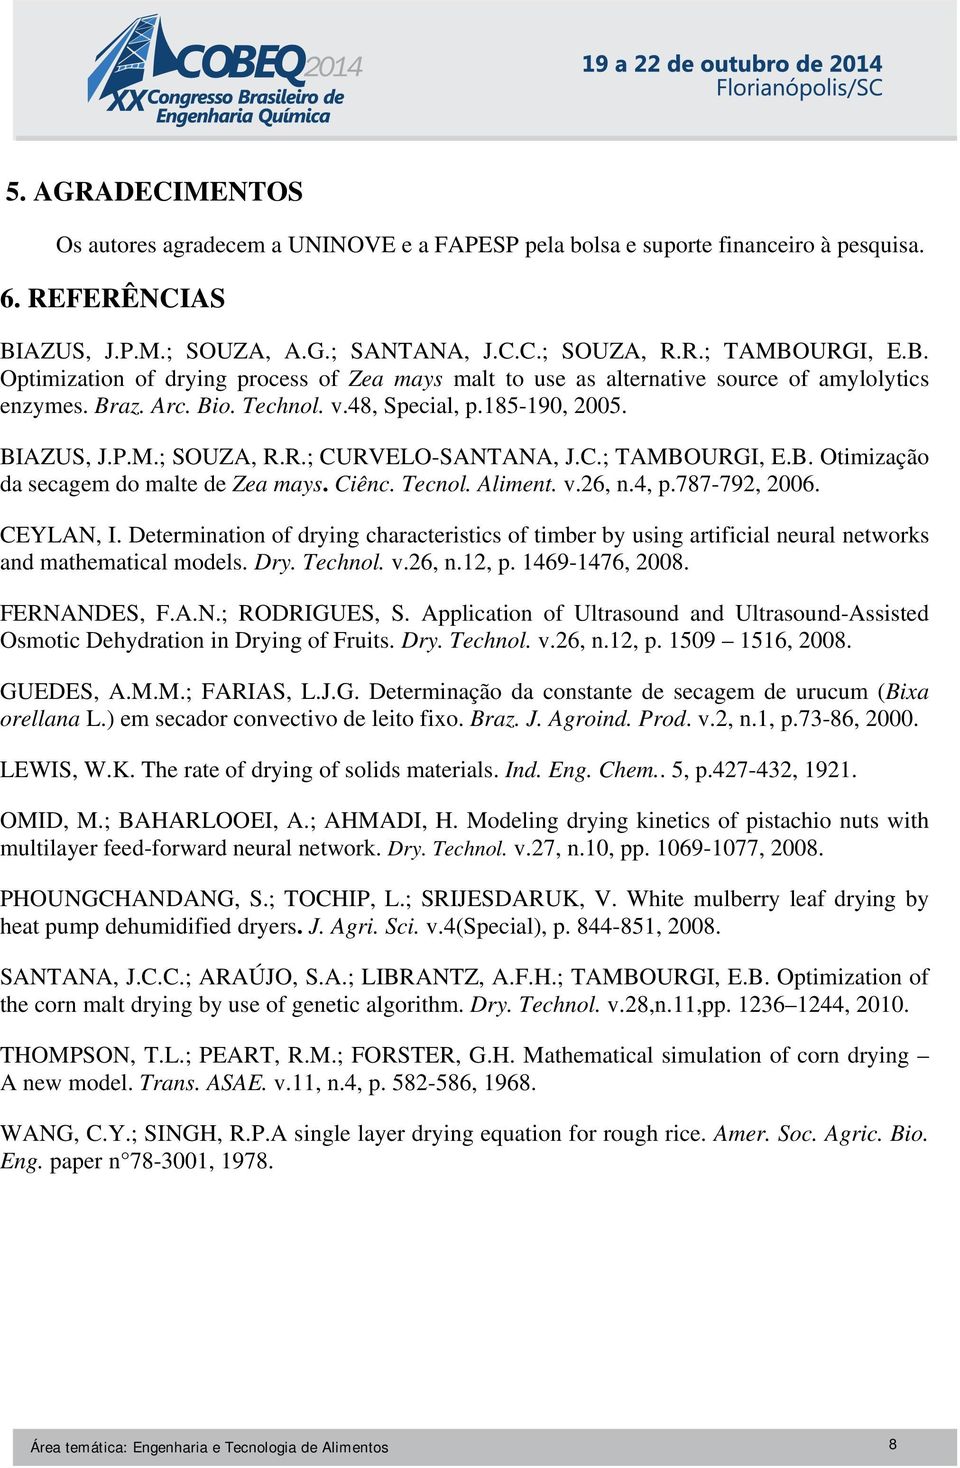 v.48, Special, p.185-190, 2005. BIAZUS, J.P.M.; SOUZA, R.R.; CURVELO-SANTANA, J.C.; TAMBOURGI, E.B. Otimização da secagem do malte de Zea mays. Ciênc. Tecnol. Aliment. v.26, n.4, p.787-792, 2006.